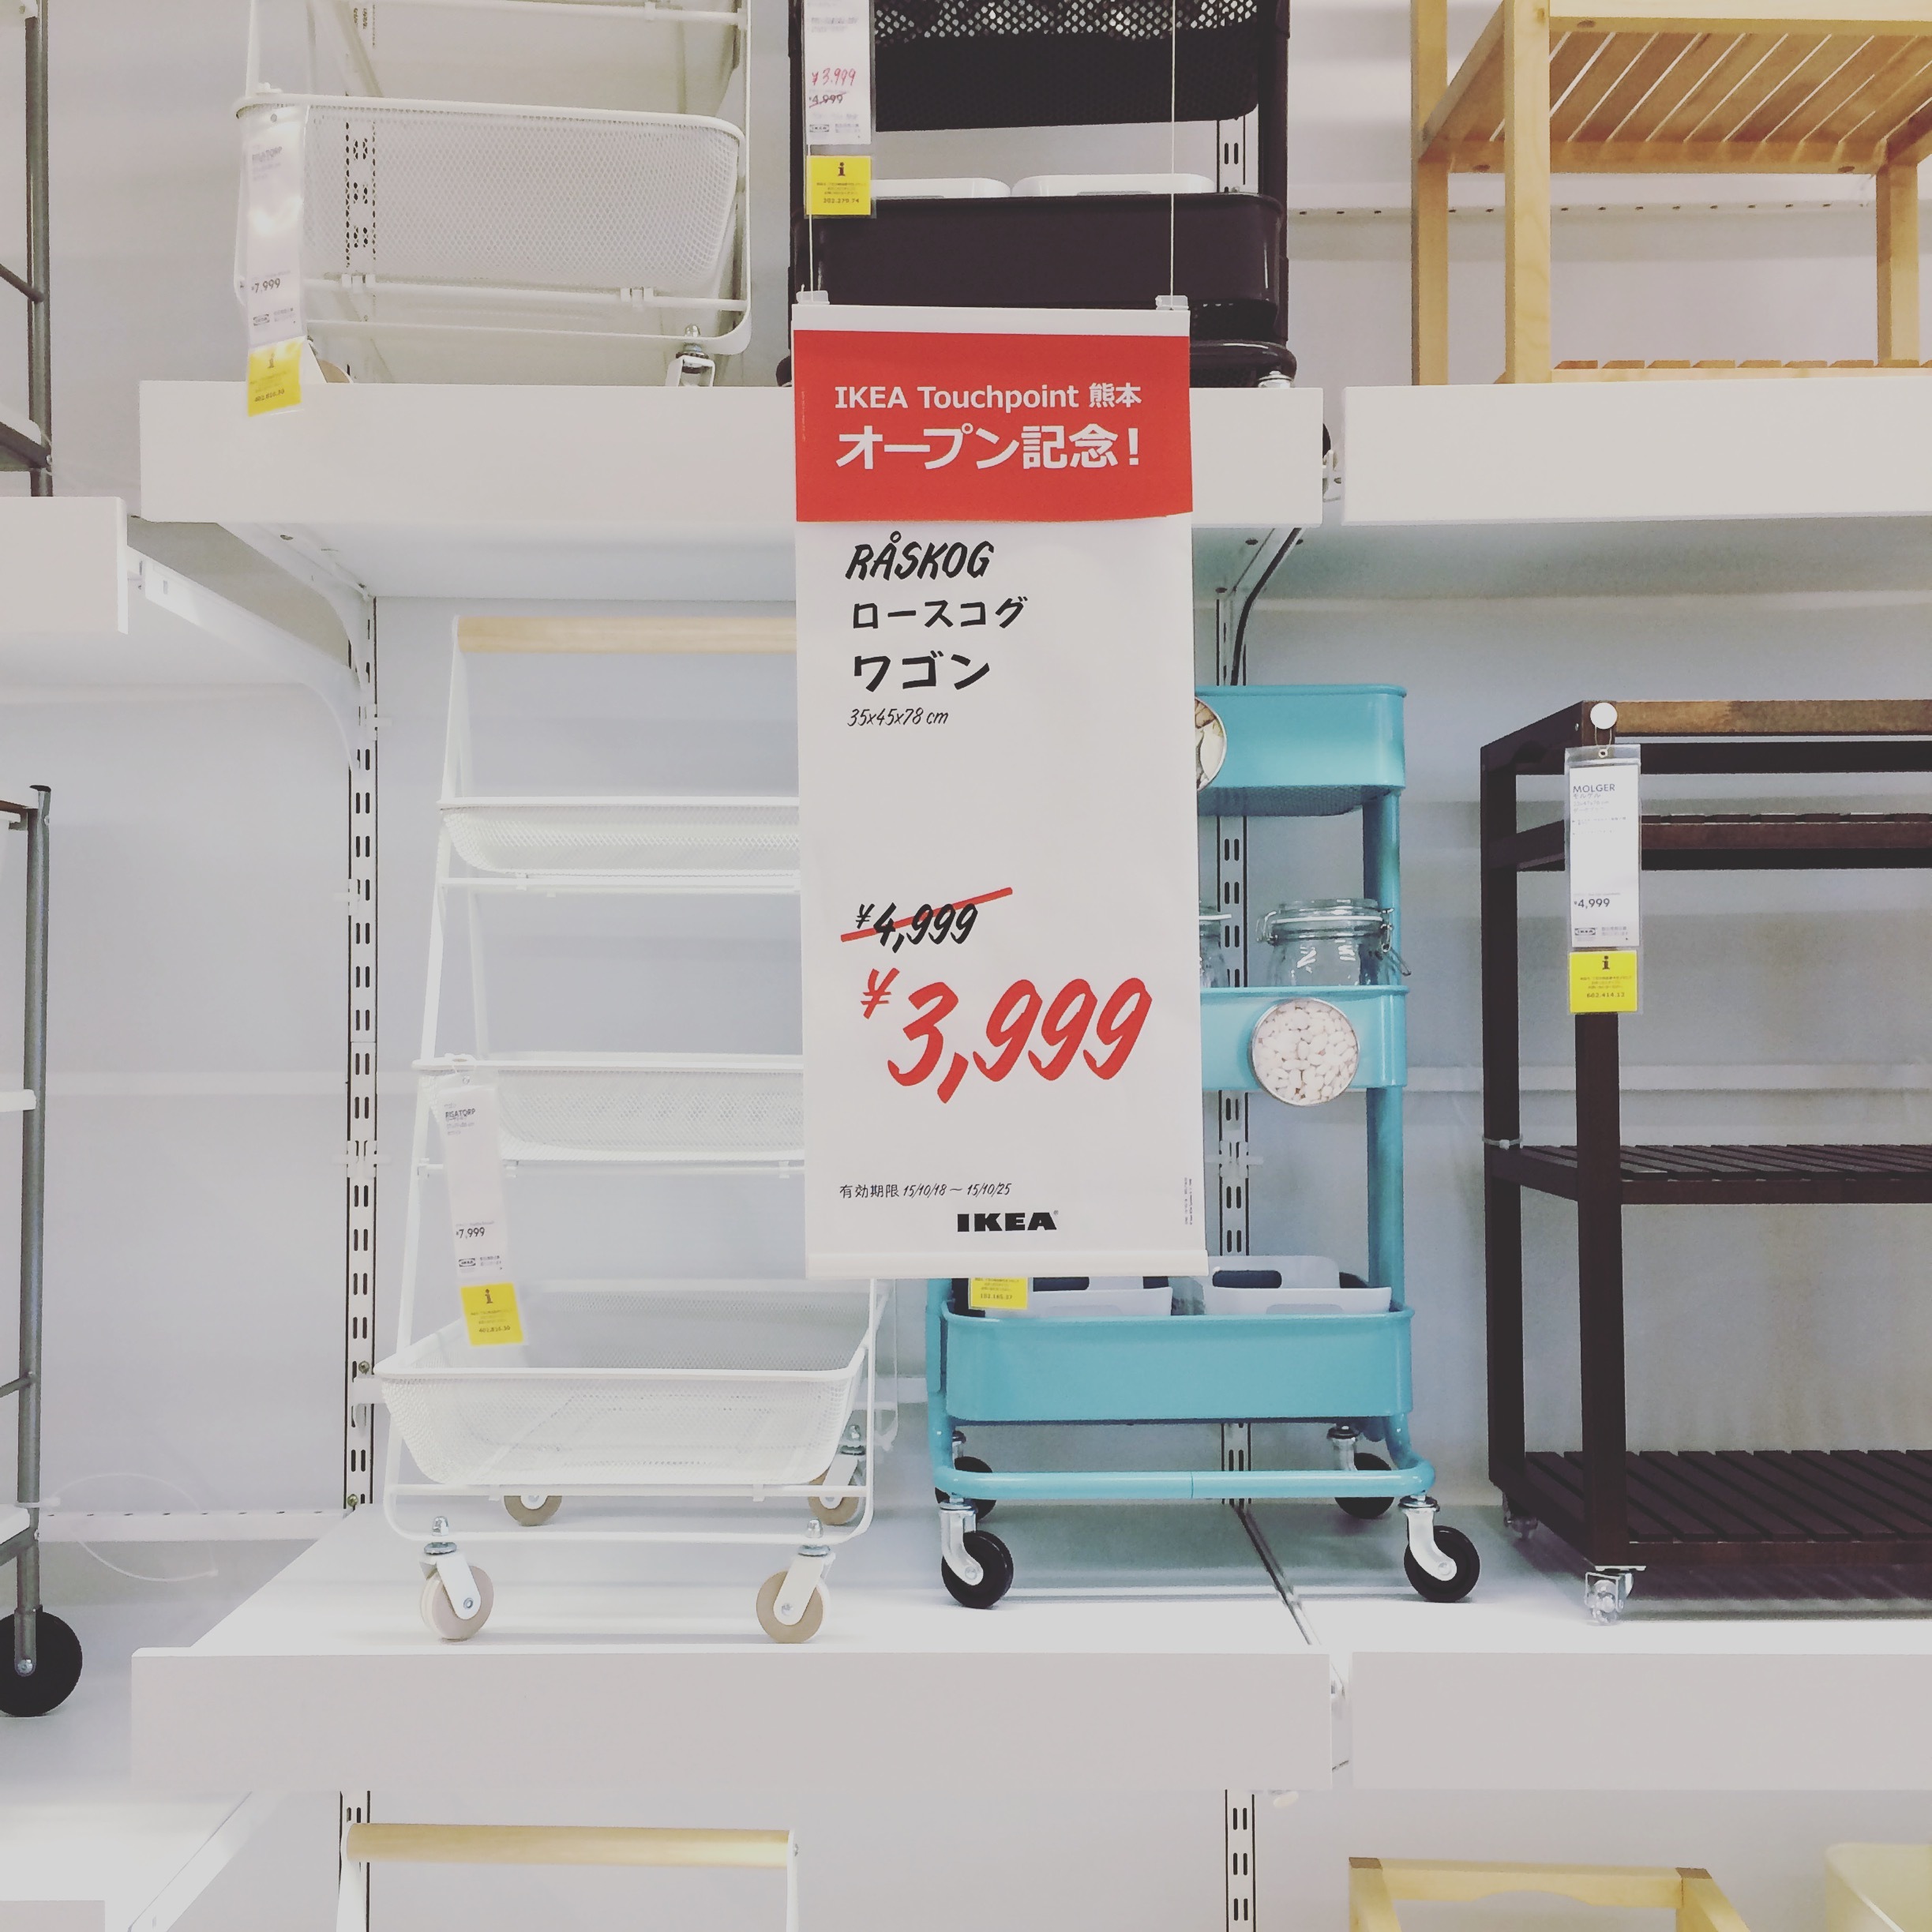 レポ 日本発 Touchpoint Ikea イケア 熊本が10 23 金 オープン 暮らしニスタ